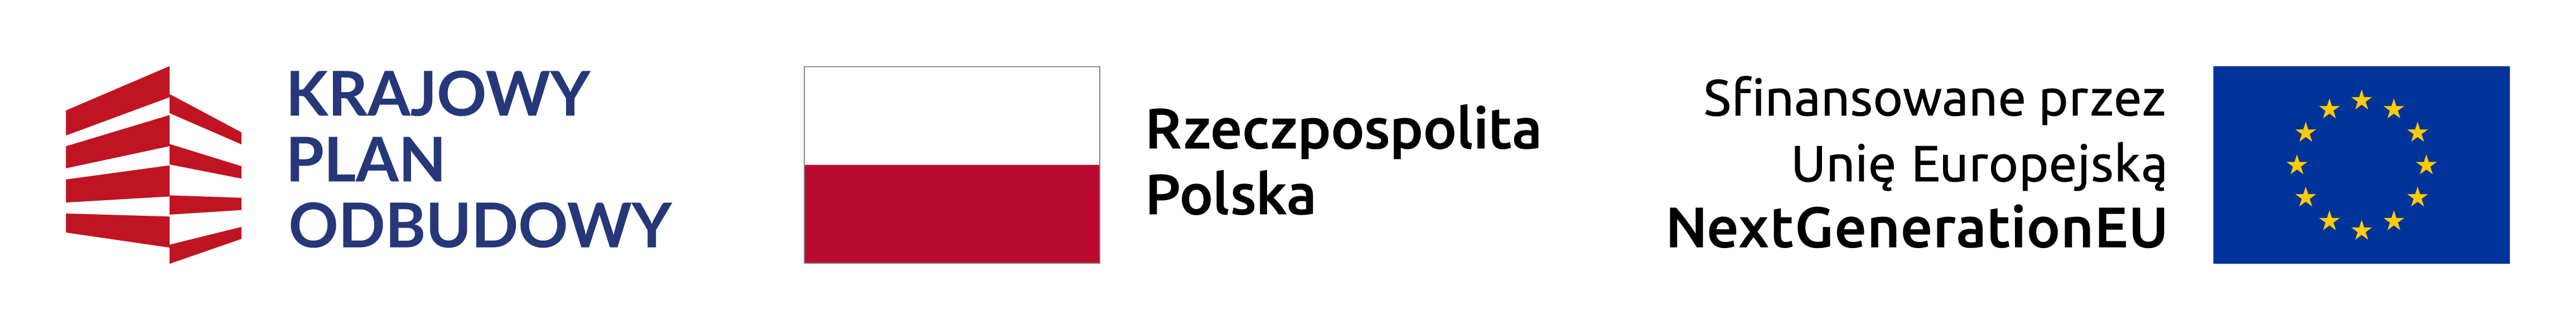 Logo Krajowego Planu Odbudowy, flaga Rzeczpospolita Polska oraz logo Unii Europejskiej z hasłem Sfinansowane przez Unię Europejską, Next Generation EU, symbolizujące wsparcie dla projektów ekologicznych, takich jak instalacje fotowoltaiczne realizowane przez SOLAND w Płocku.